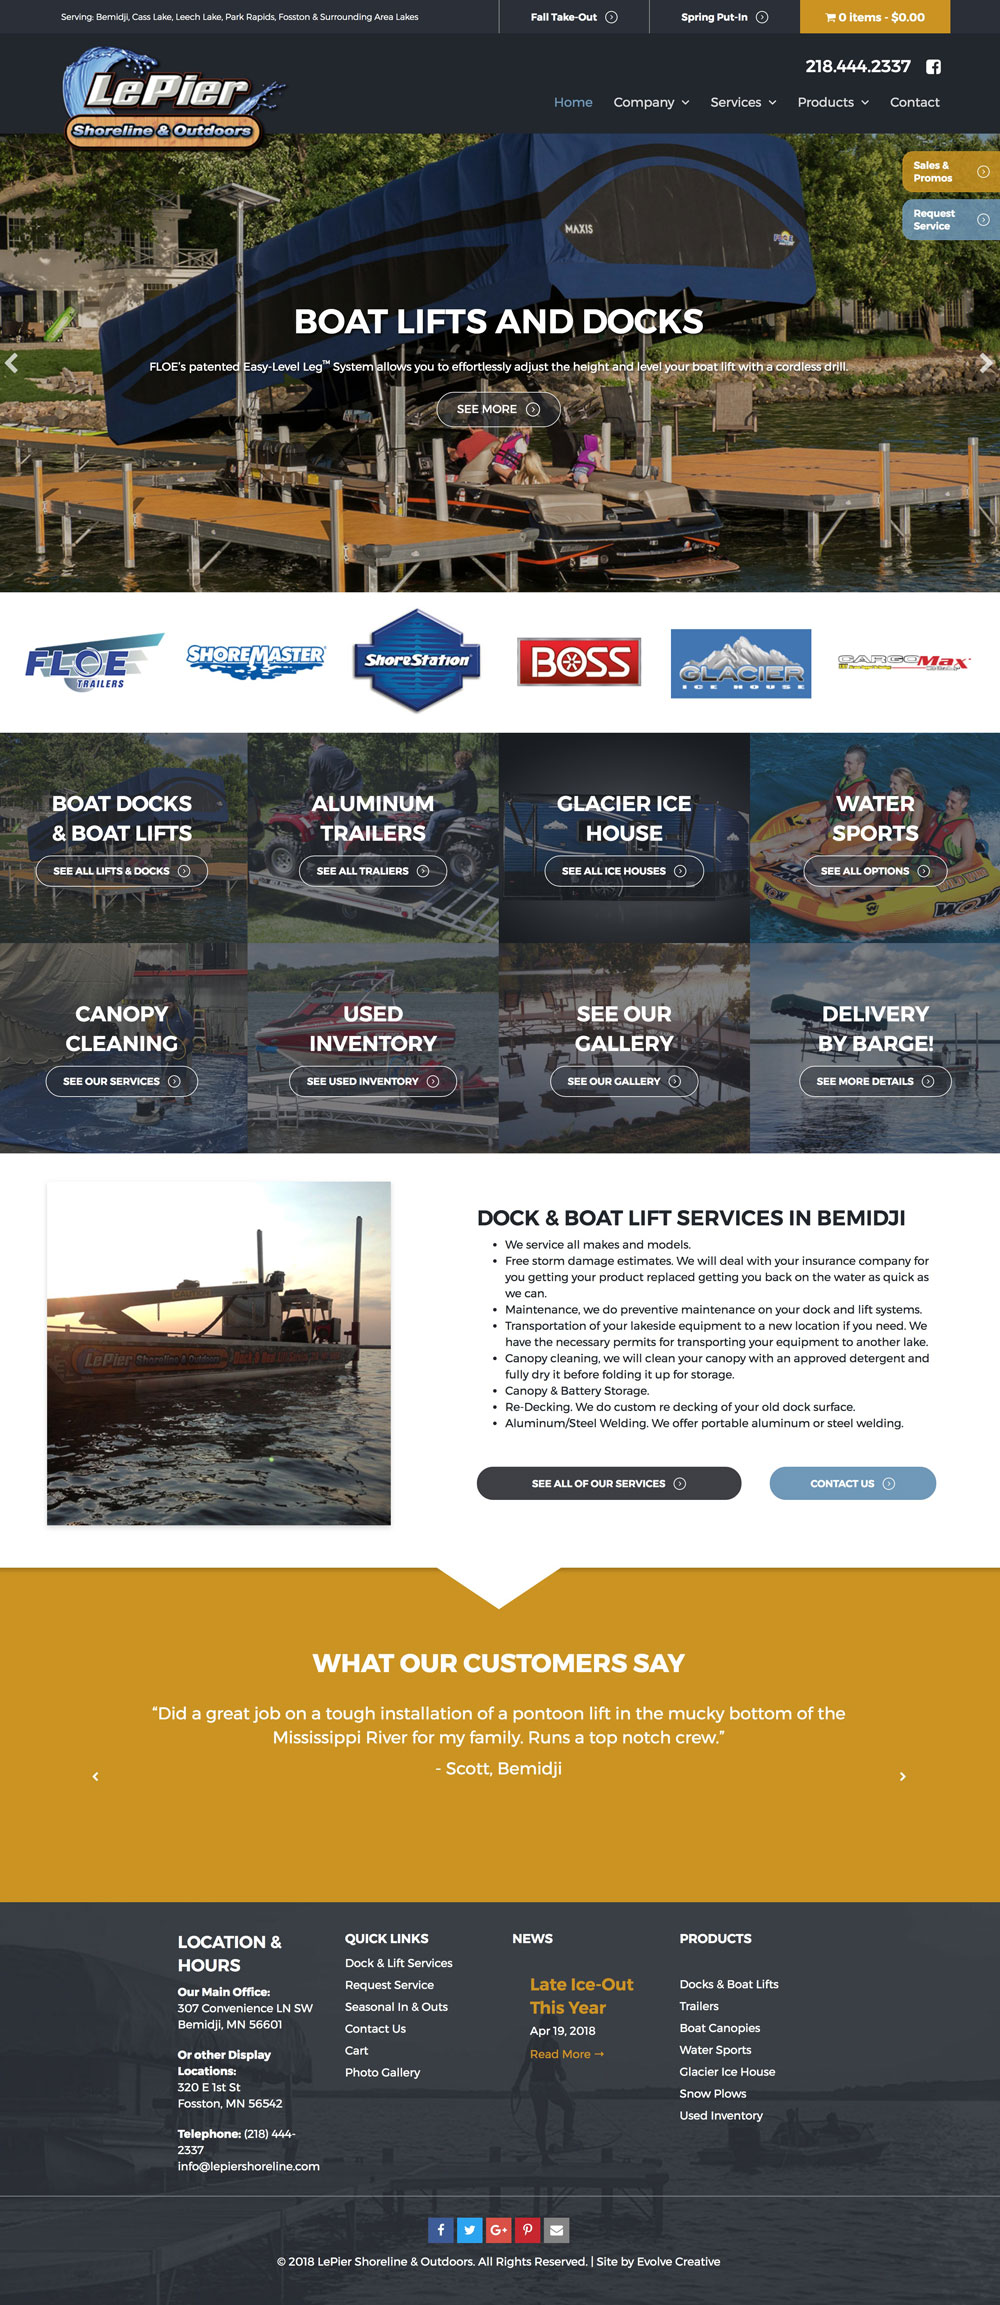 LePier Shoreline docks website